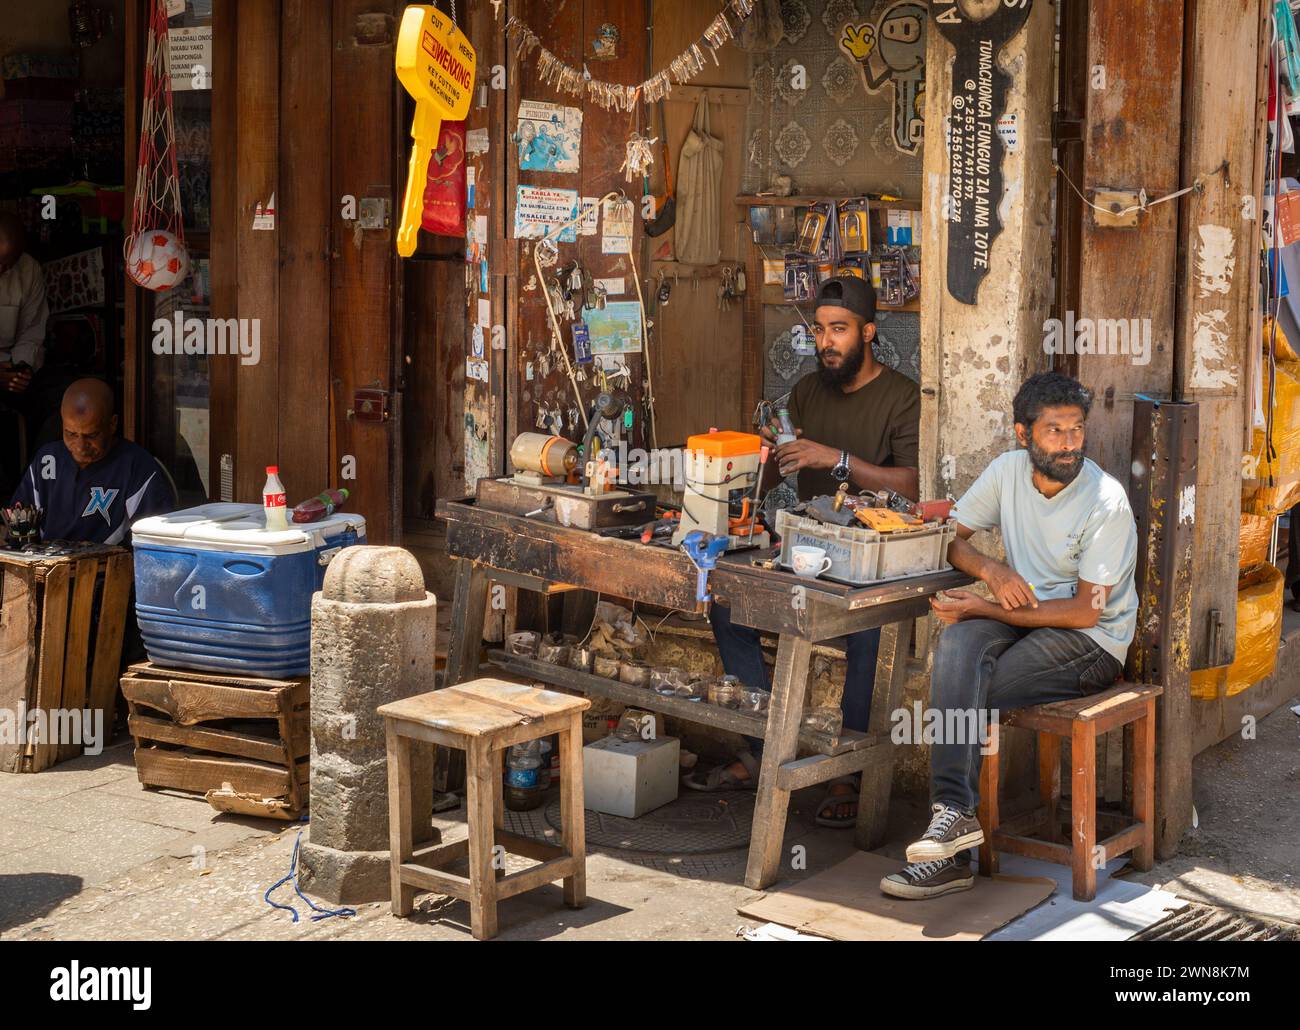 Les hommes sont assis dans un atelier de découpe de clés à Stone Town Market, Zanzibar, Tanzanie Banque D'Images